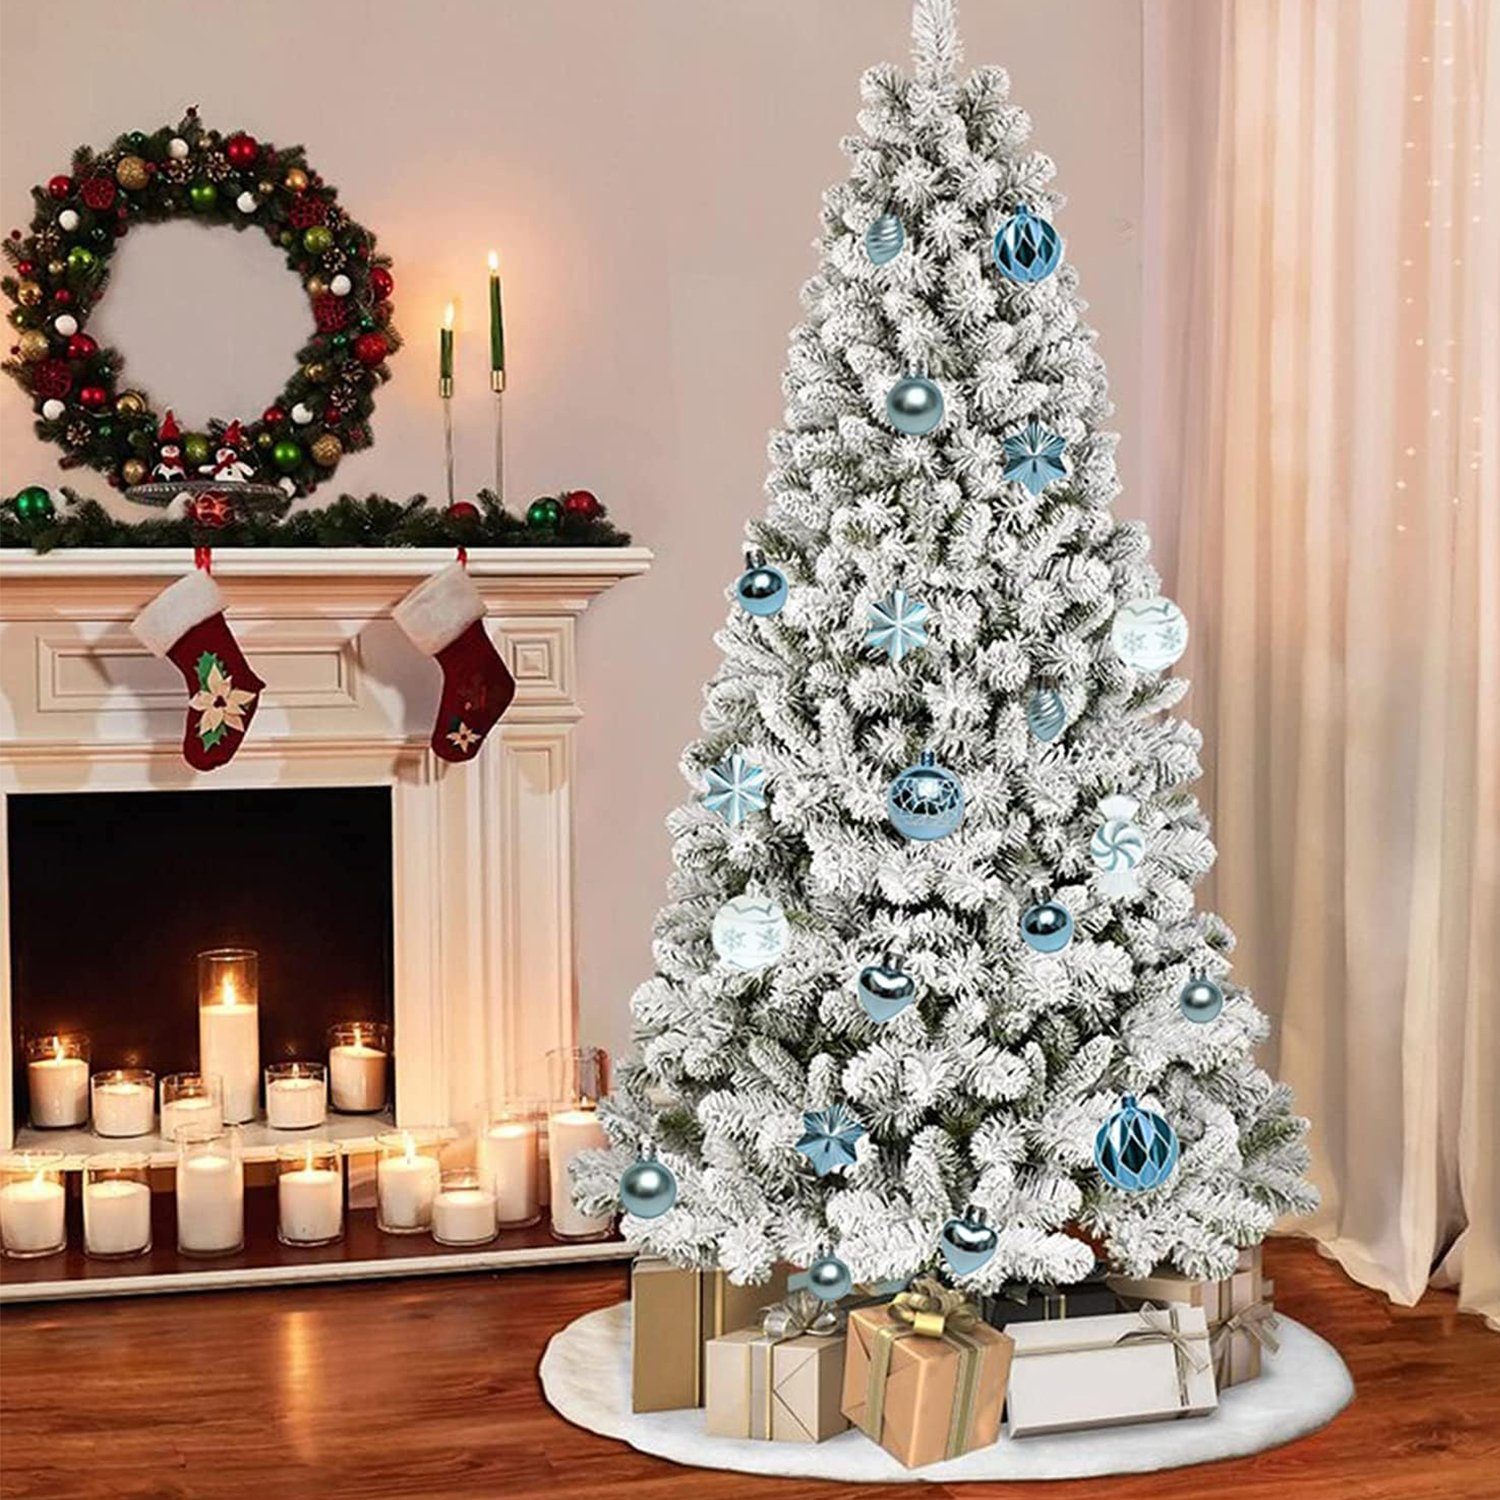 Weihnachtsdeko Rot/Weiß 73tlg MAGICSHE Weihnachtsbaumkugel Ornamente-Set